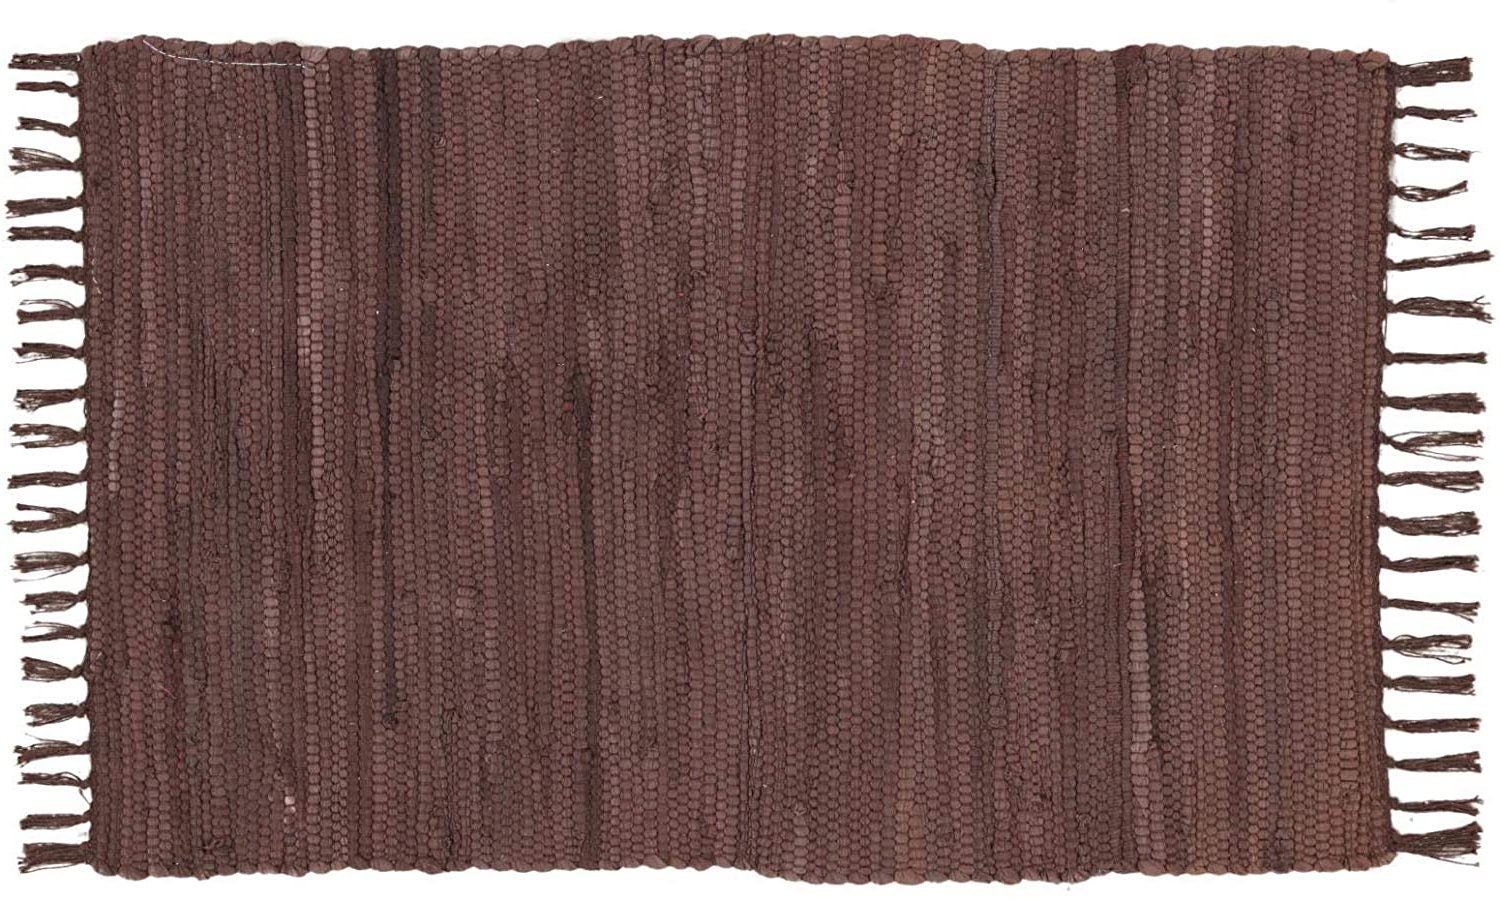 Alfombra Jarapa Barata Chindy Medidas 40x60cm Color Colores Oscuros